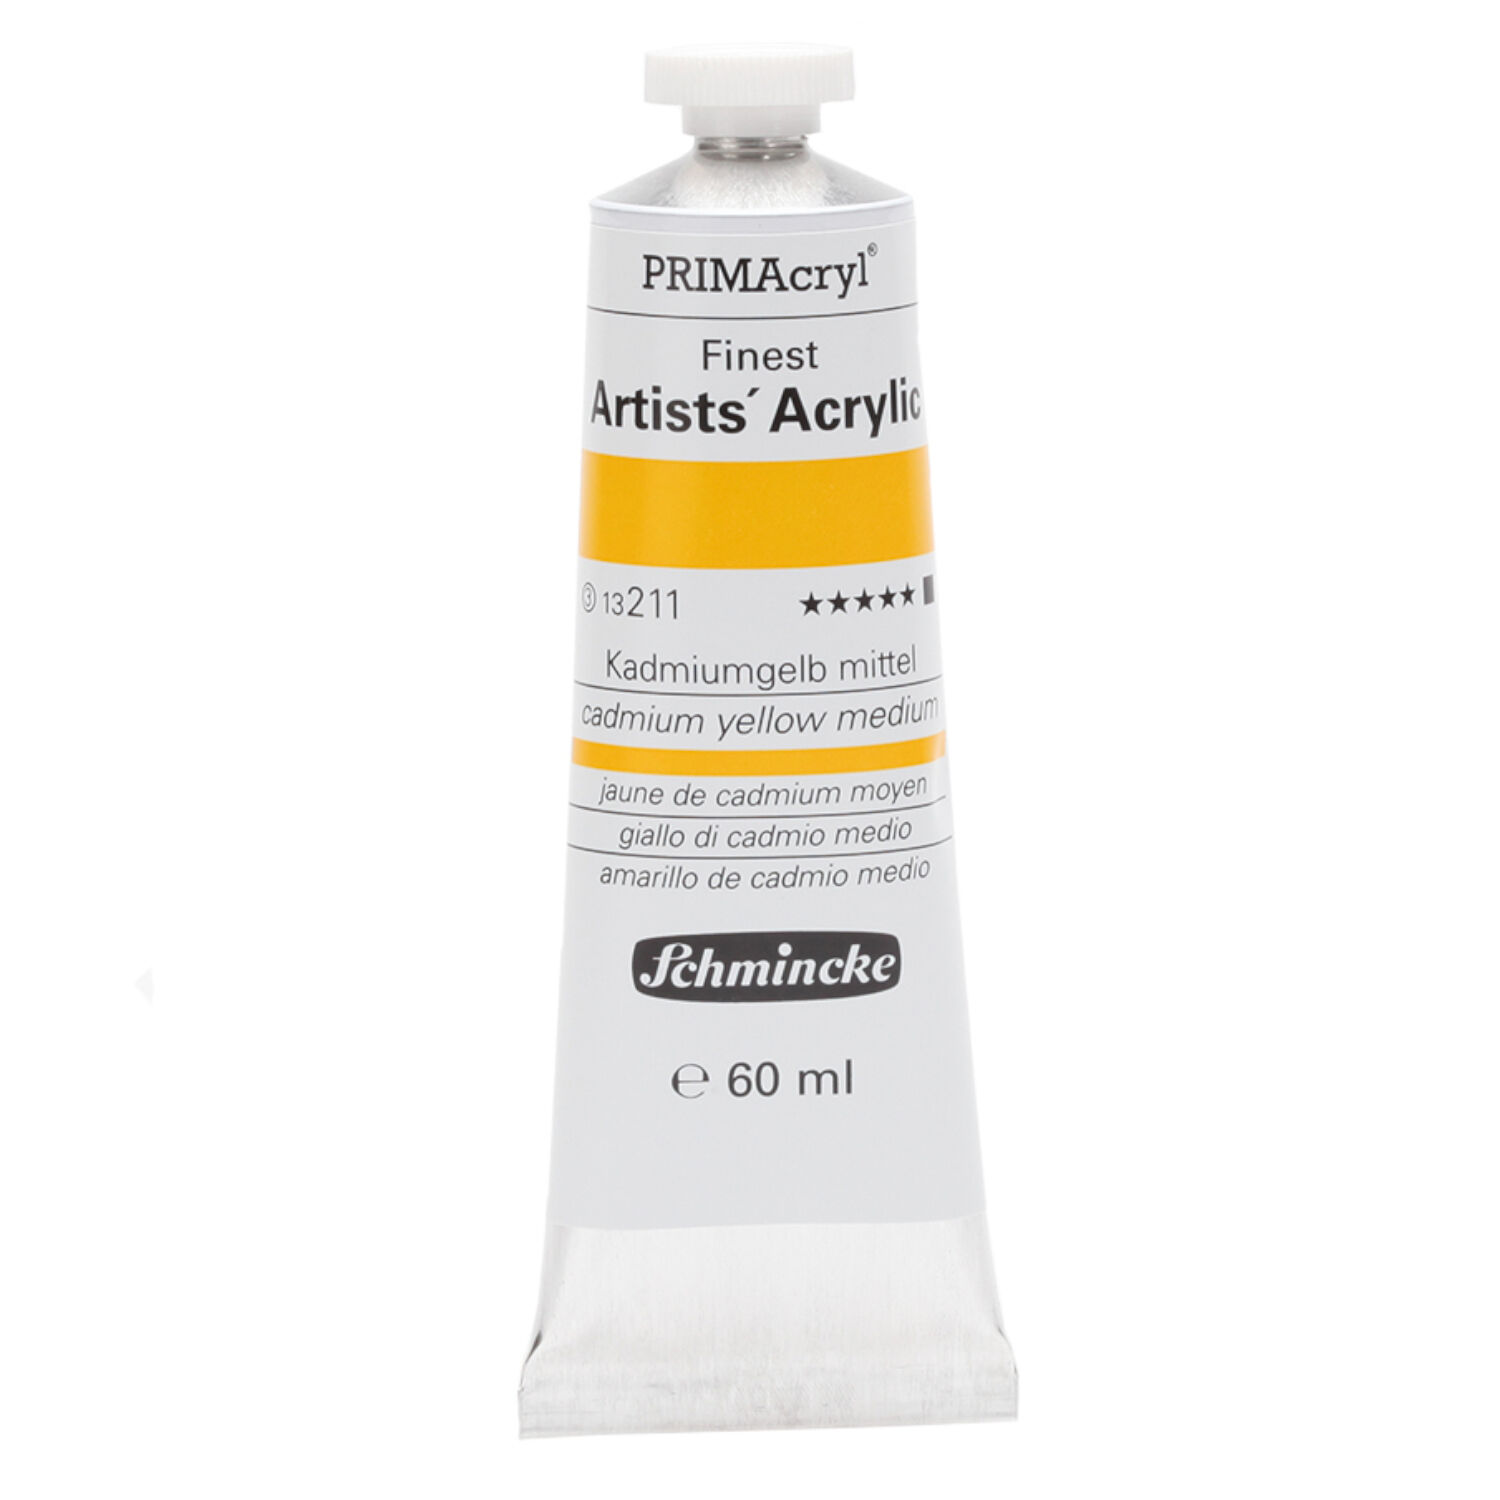 PRIMAcryl 60ml, Kadmiumgelb mittel